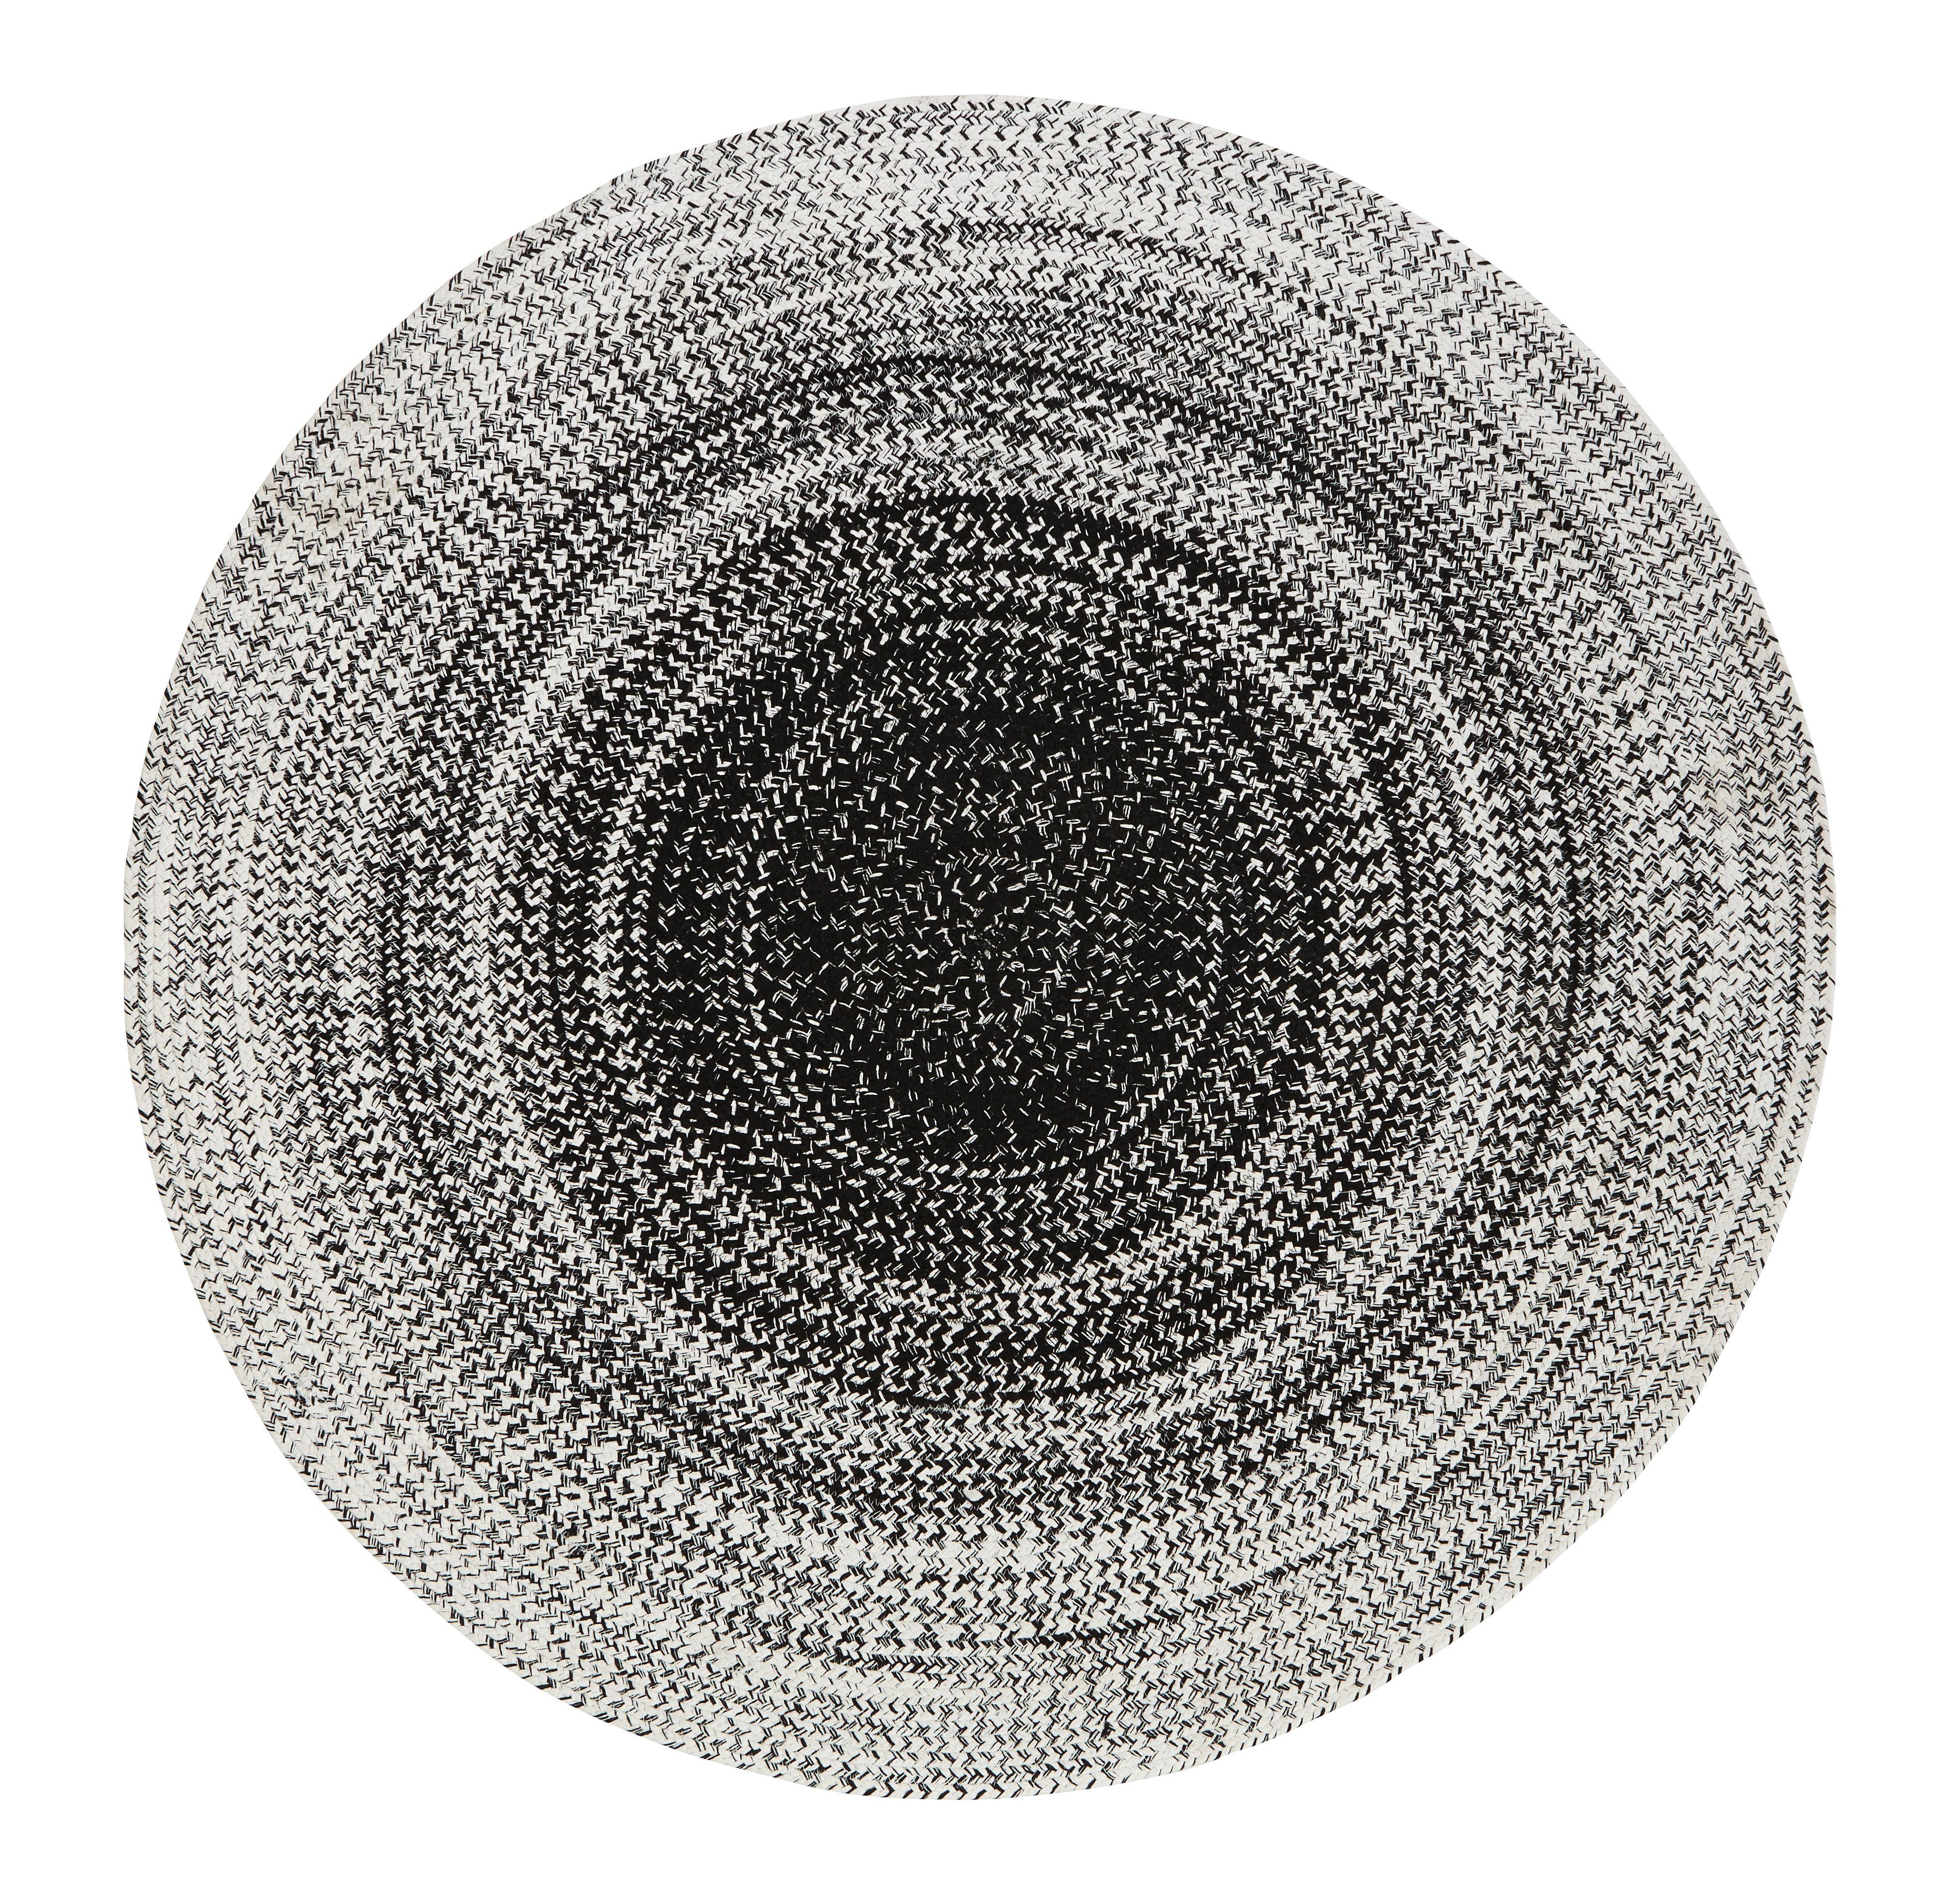 Flachwebeteppich Marie in Schwarz/Weiss Ø ca. 160cm - Weiss/Schwarz, Textil (160cm) - Modern Living